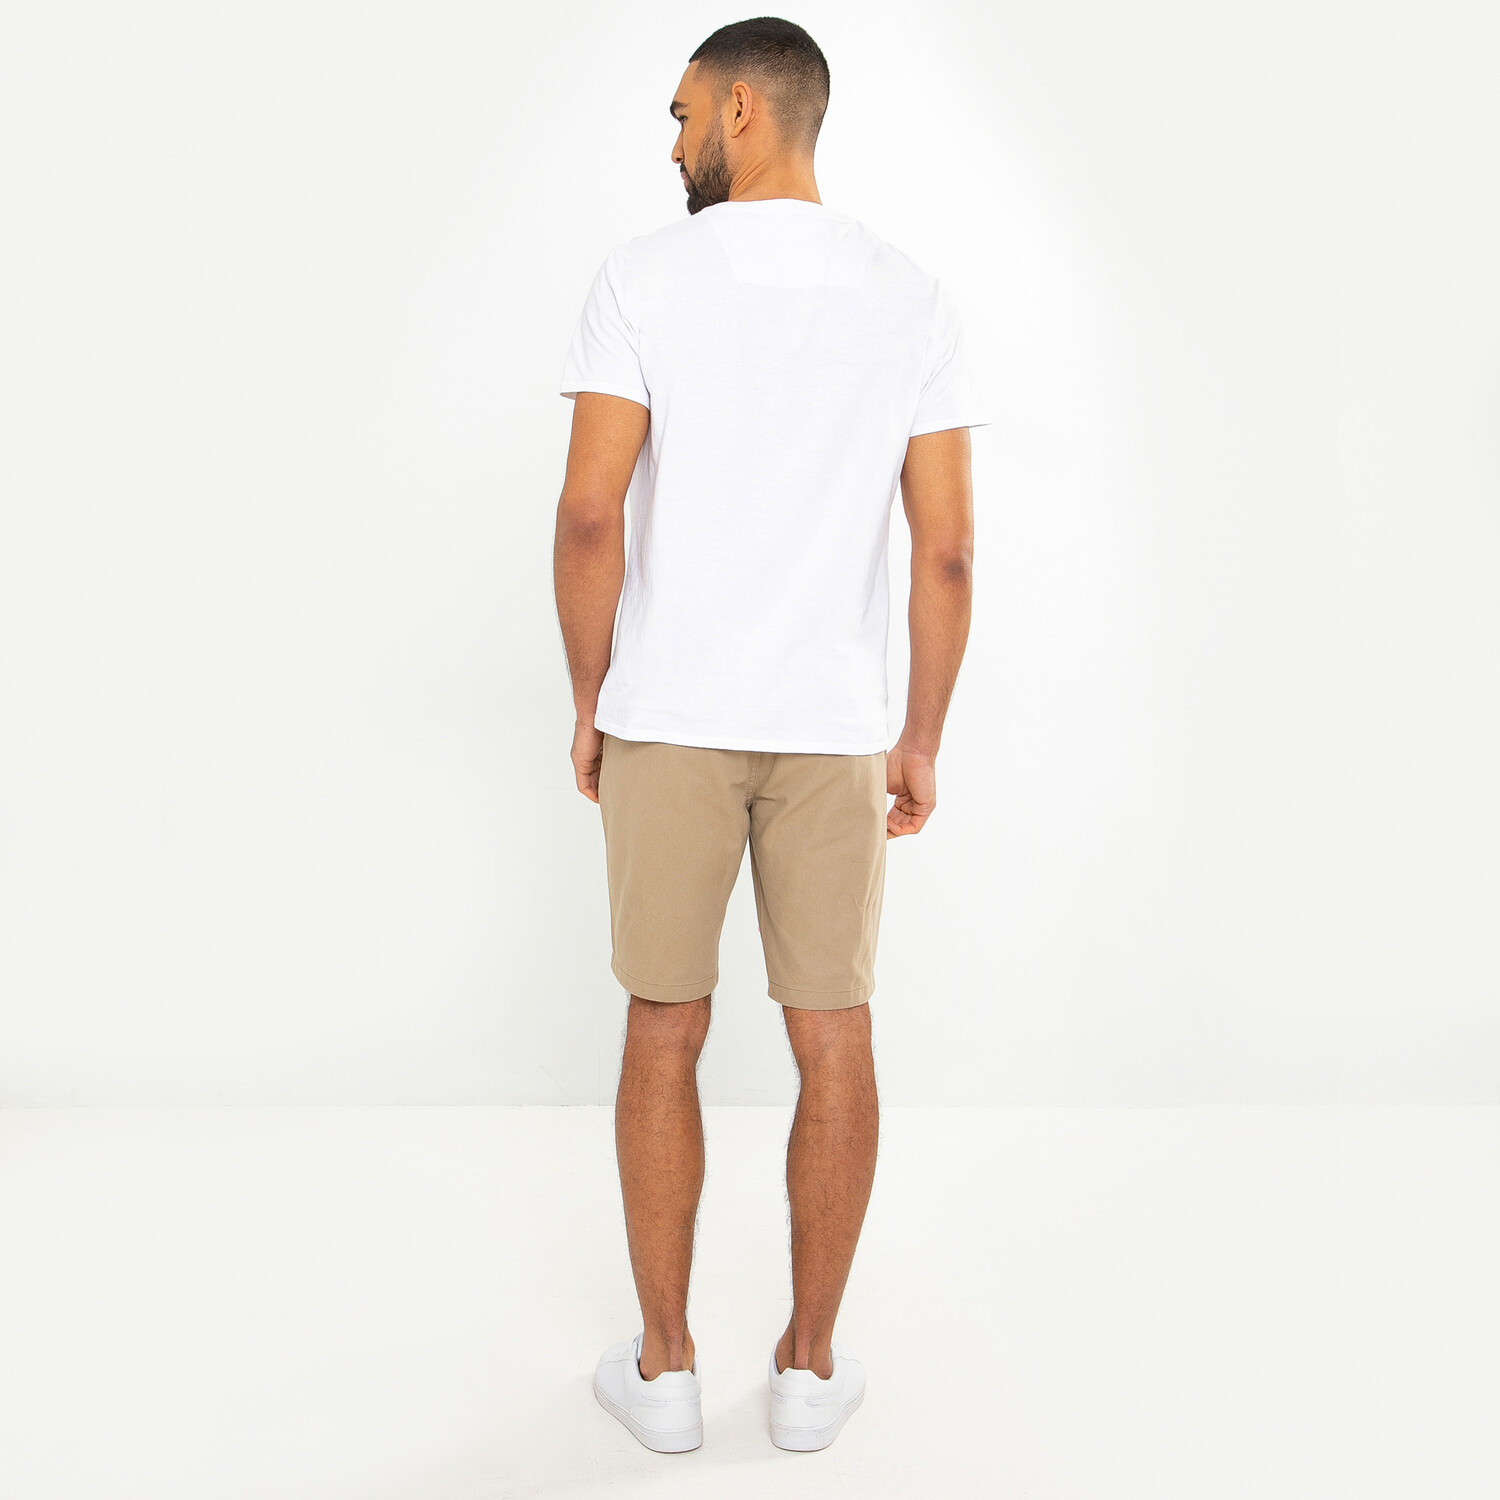 Southsea Men's Cotton Shorts  - Stone / S Image 5